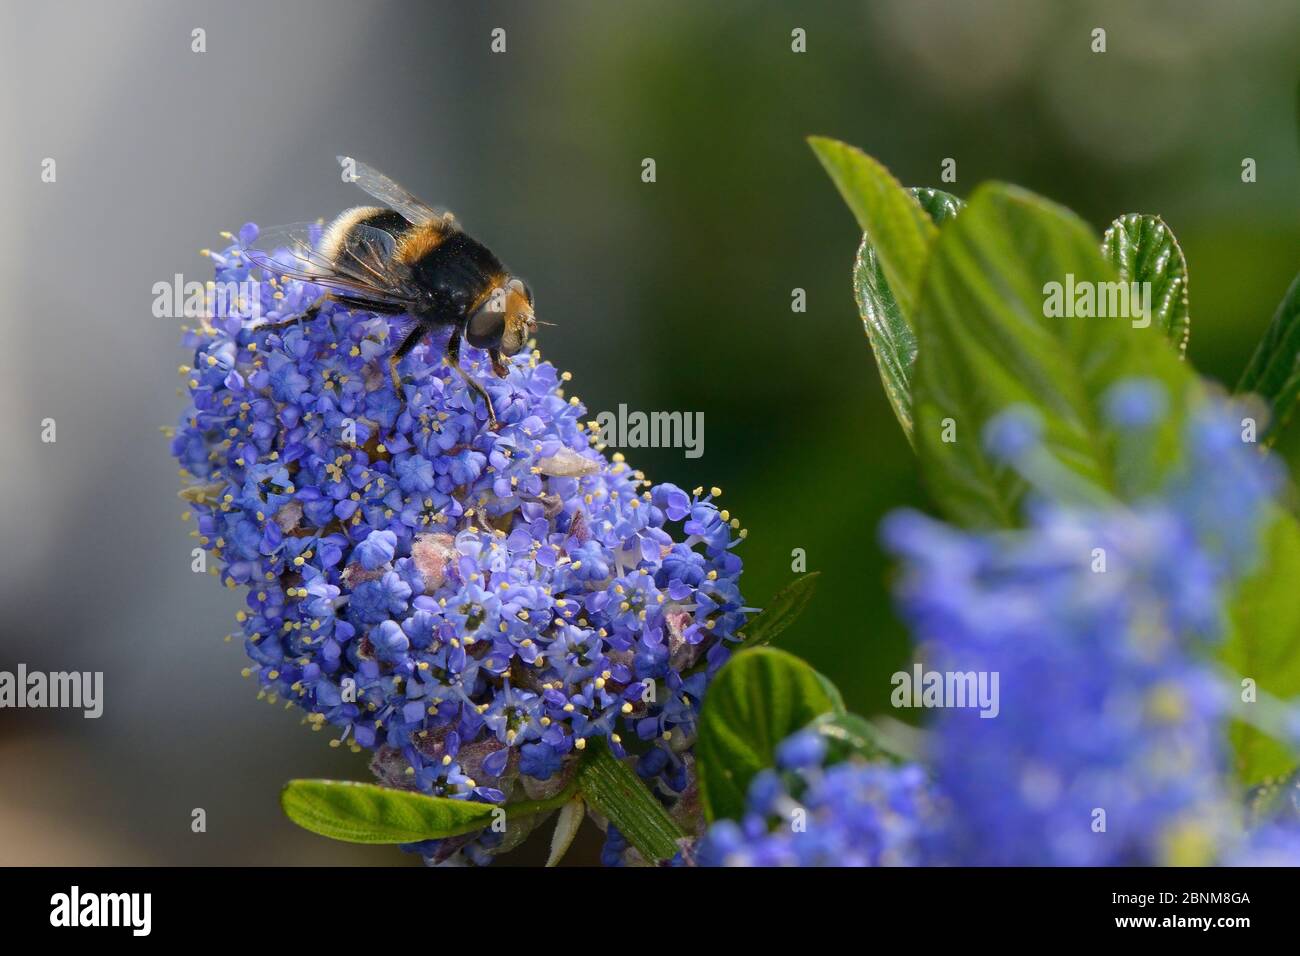 Bumblebee-mimicando Hoverfly (Eristalis intricarius) alimentándose en las flores de Ceanothus en un jardín plantado con flores para atraer polinizadores, Dungeness, Foto de stock